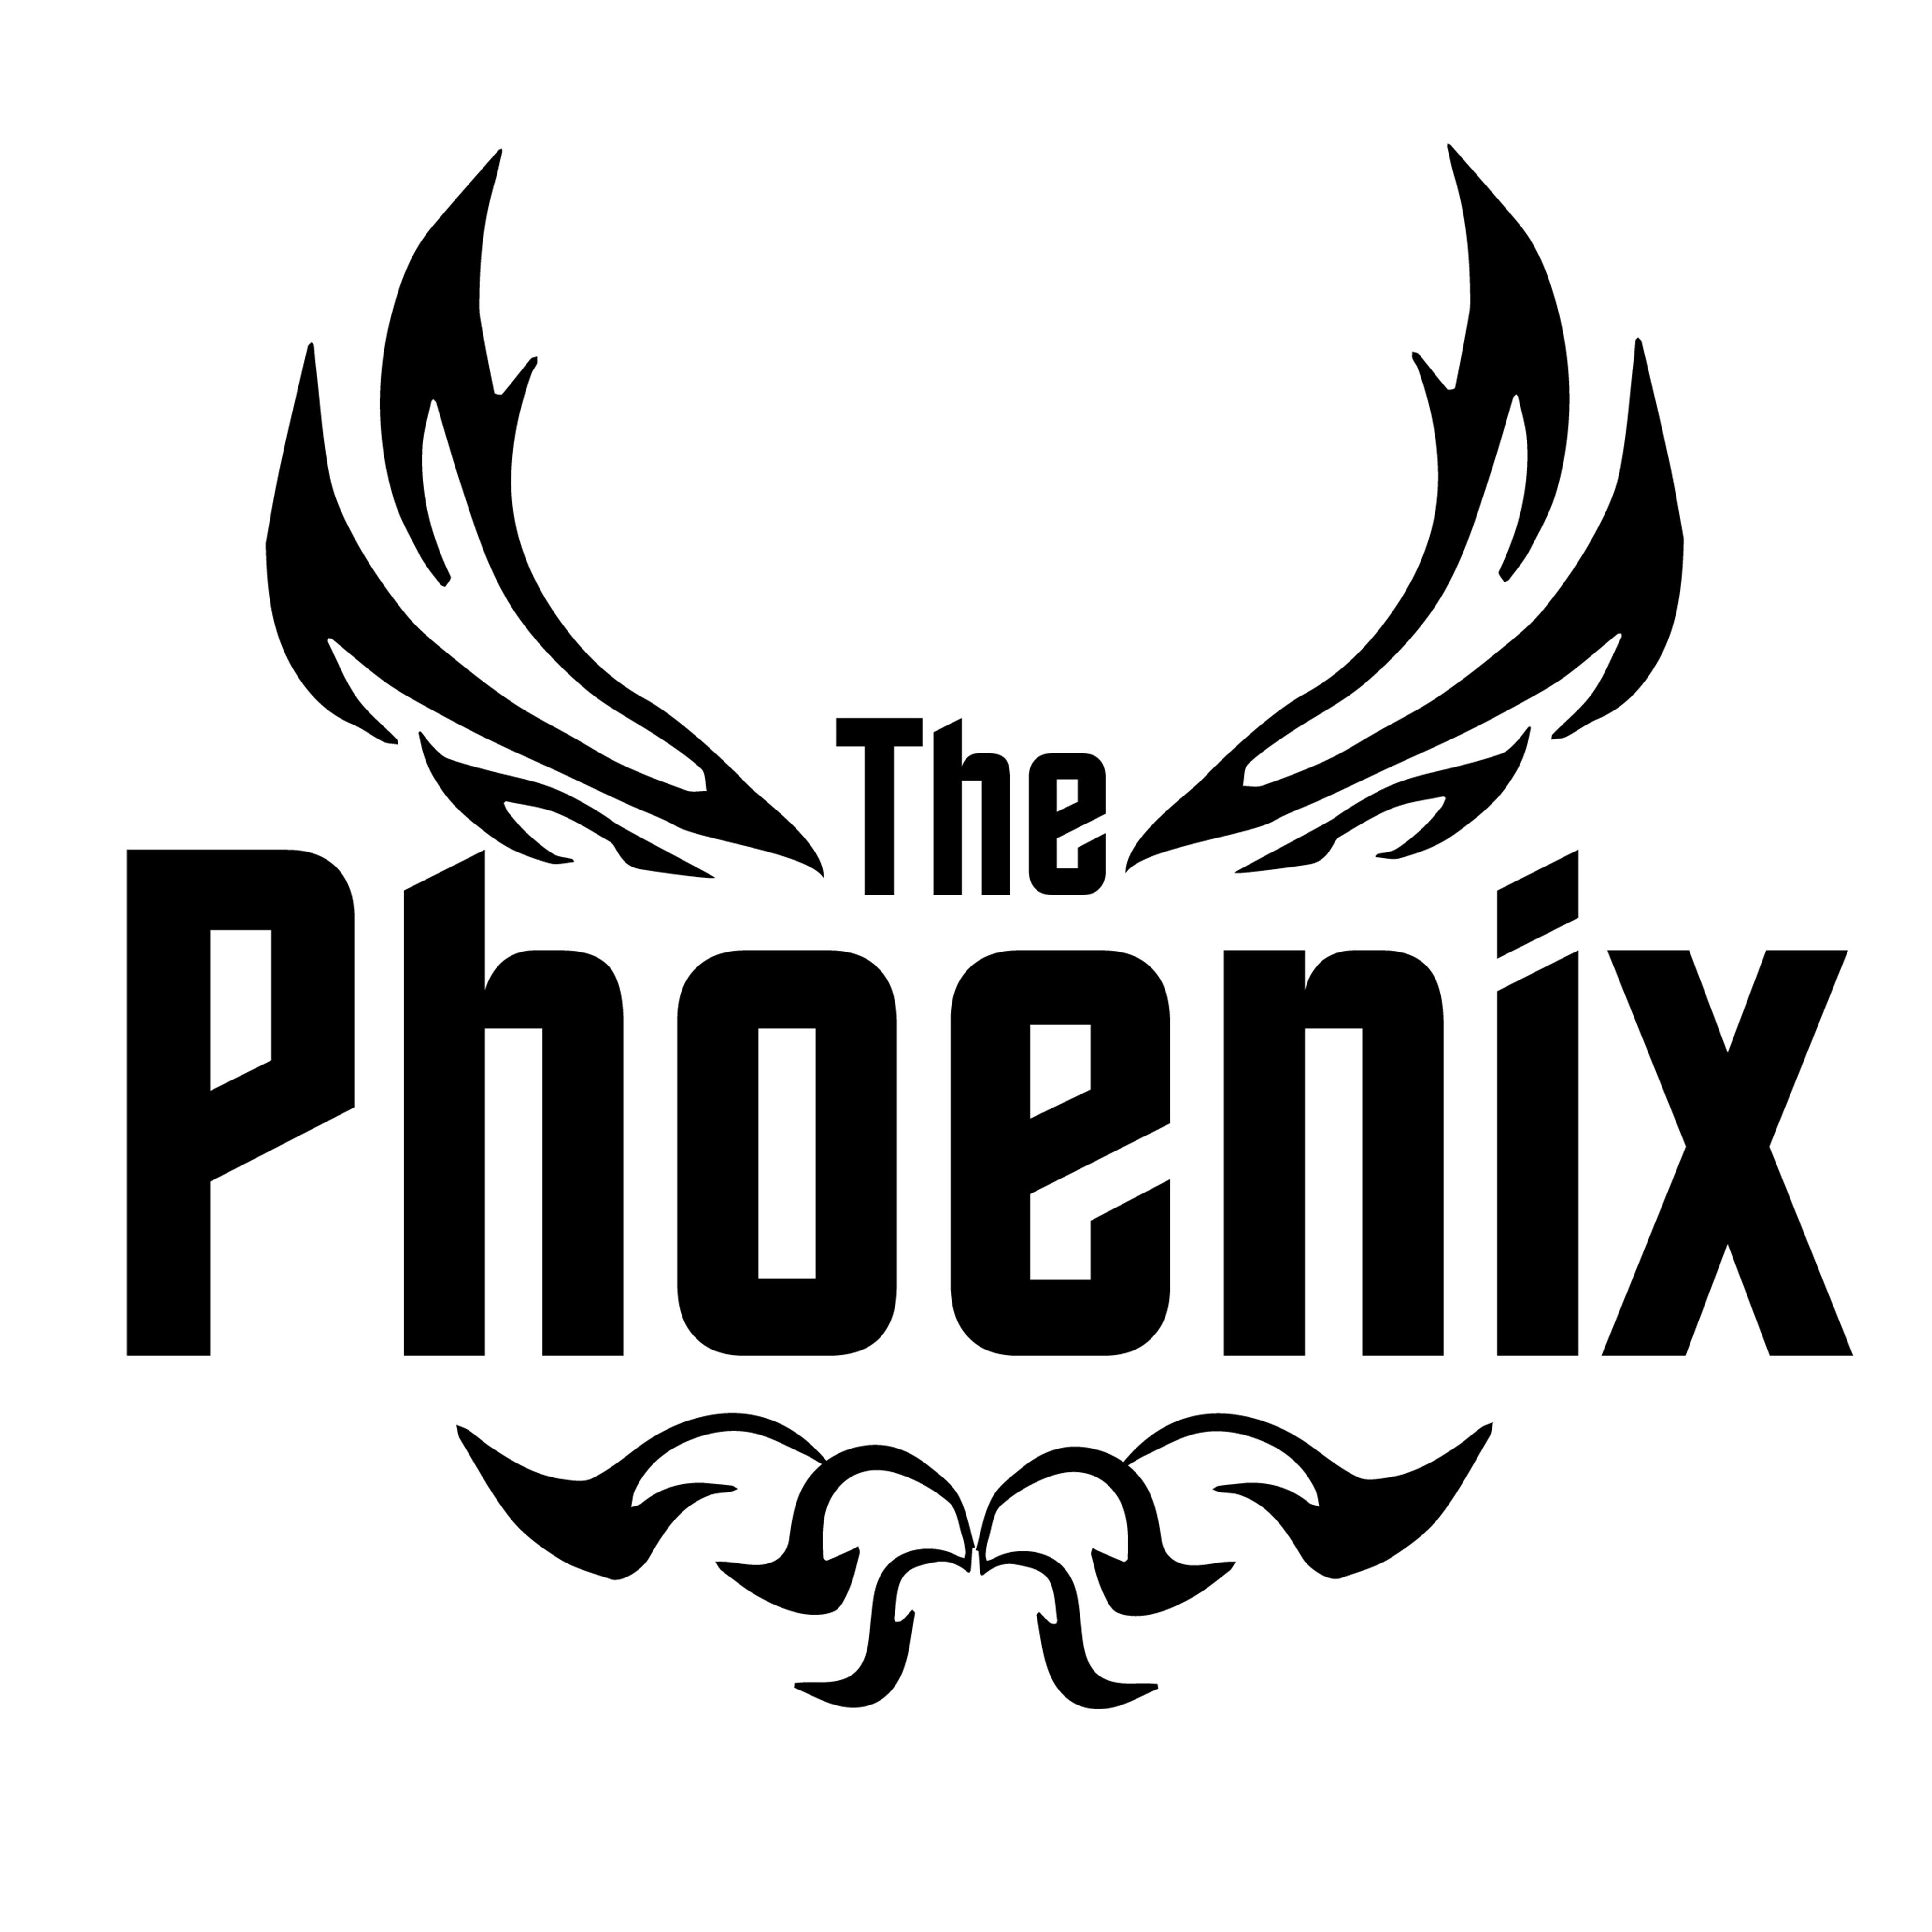 THE PHOENIX